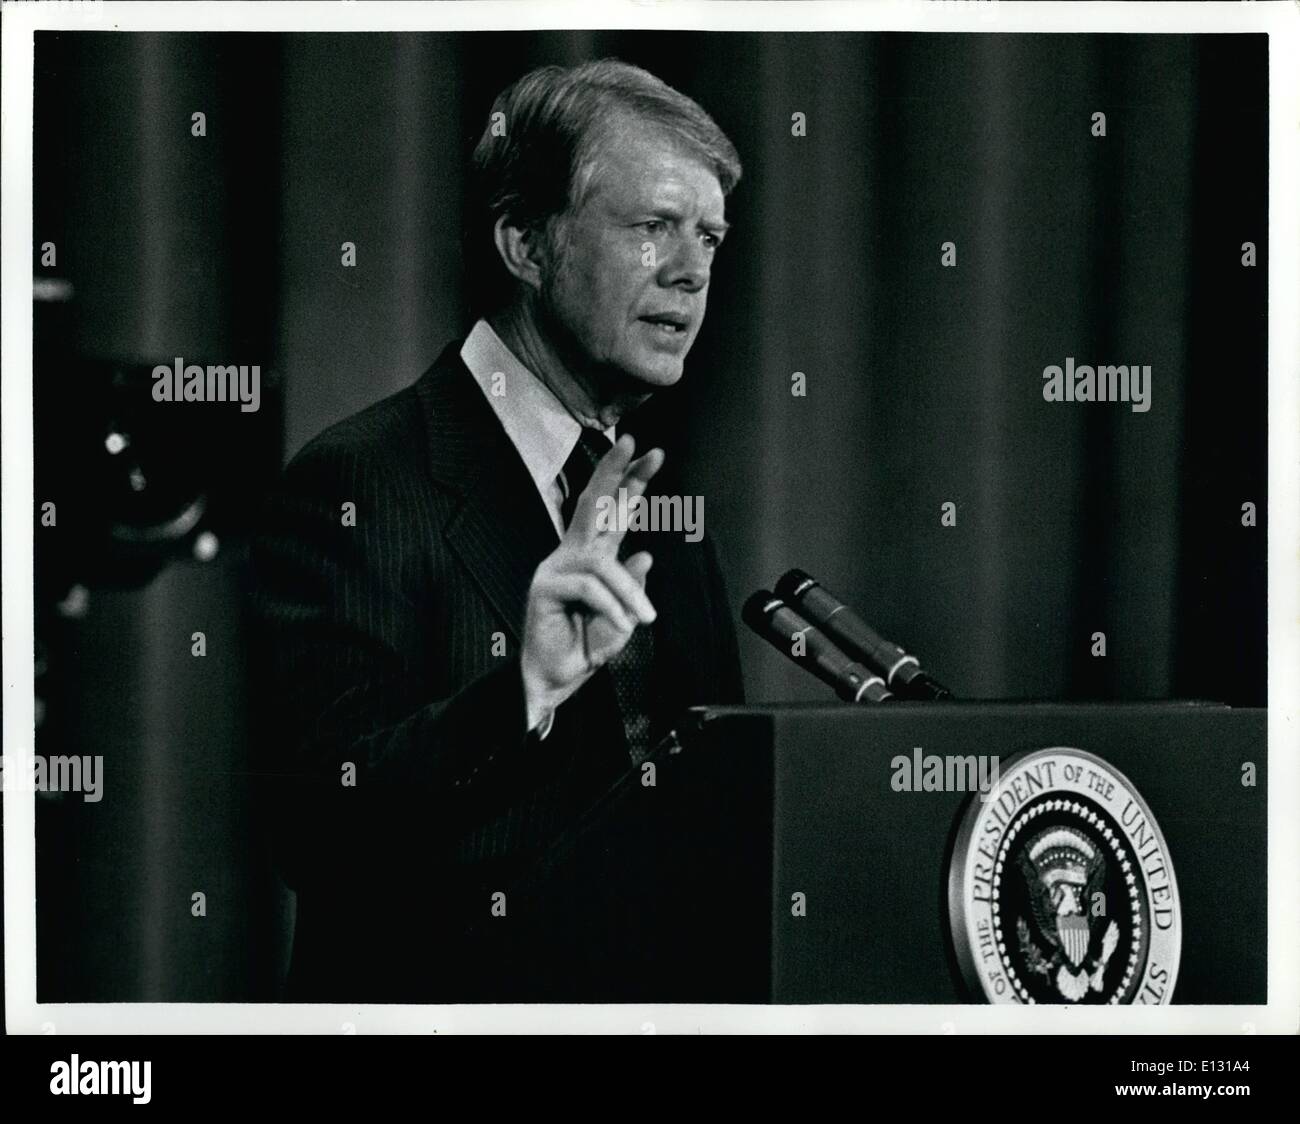 El 26 de febrero de 2012 - El presidente Jimmy Carter sobre la inflación la dirección de la Sociedad Americana de Editores de Periódicos, Washington Hilton, en Washington D.C. Foto de stock